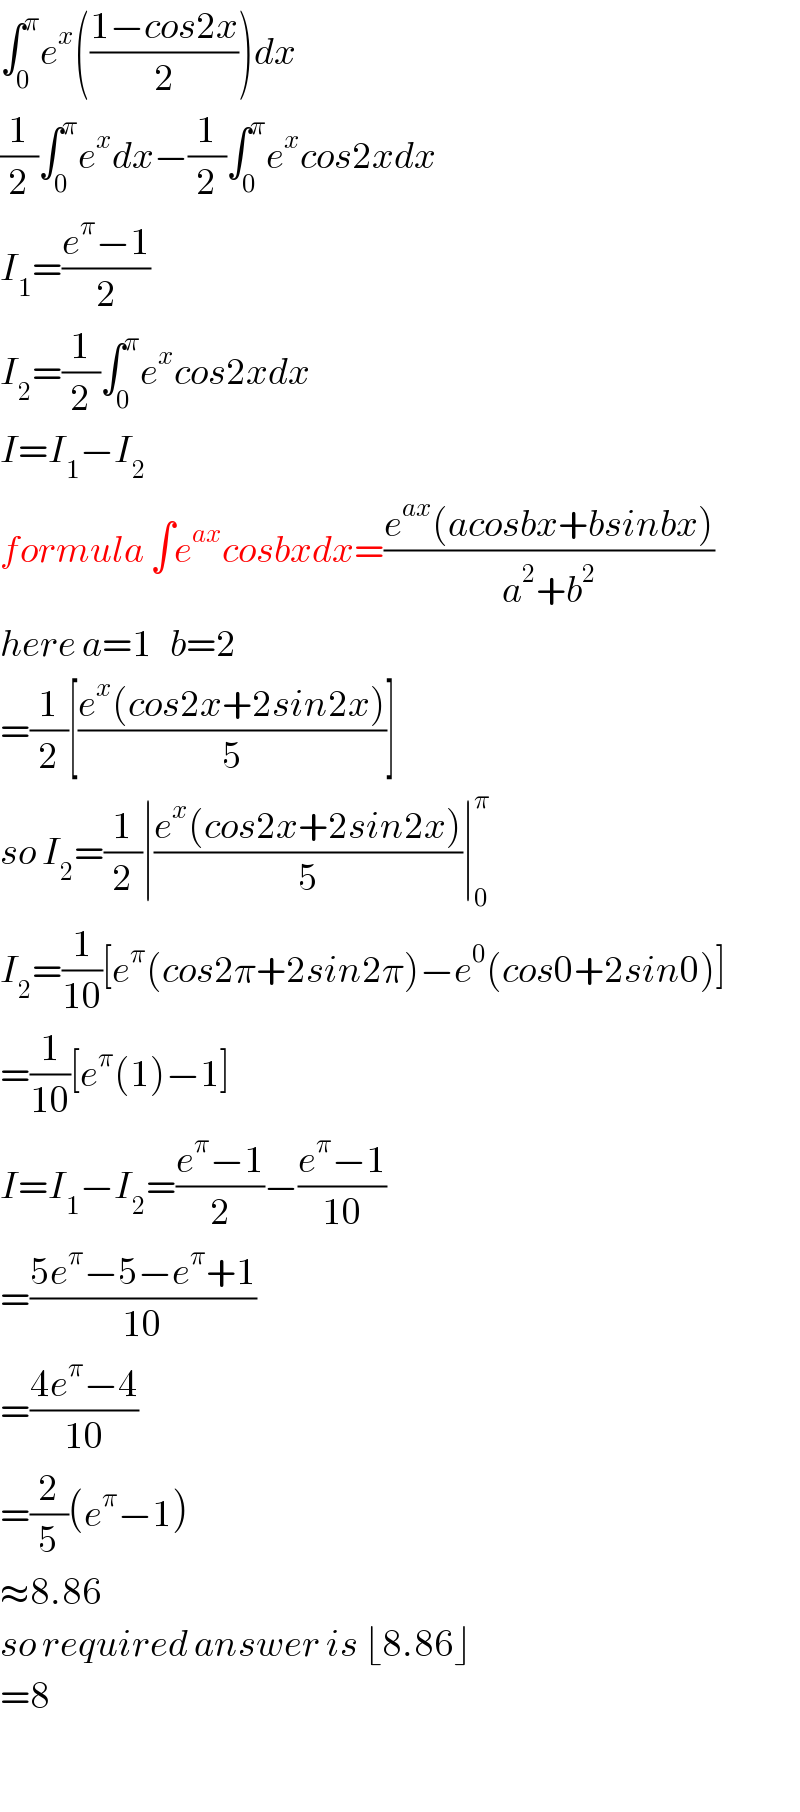 ∫_0 ^π e^x (((1−cos2x)/2))dx  (1/2)∫_0 ^π e^x dx−(1/2)∫_0 ^π e^x cos2xdx  I_1 =((e^π −1)/2)  I_2 =(1/2)∫_0 ^π e^x cos2xdx  I=I_1 −I_2   formula ∫e^(ax) cosbxdx=((e^(ax) (acosbx+bsinbx))/(a^2 +b^2 ))  here a=1   b=2  =(1/2)[((e^x (cos2x+2sin2x))/5)]  so I_2 =(1/2)∣((e^x (cos2x+2sin2x))/5)∣_0 ^π   I_2 =(1/(10))[e^π (cos2π+2sin2π)−e^0 (cos0+2sin0)]  =(1/(10))[e^π (1)−1]  I=I_1 −I_2 =((e^π −1)/2)−((e^π −1)/(10))  =((5e^π −5−e^π +1)/(10))  =((4e^π −4)/(10))  =(2/5)(e^π −1)  ≈8.86  so required answer is ⌊8.86⌋  =8    